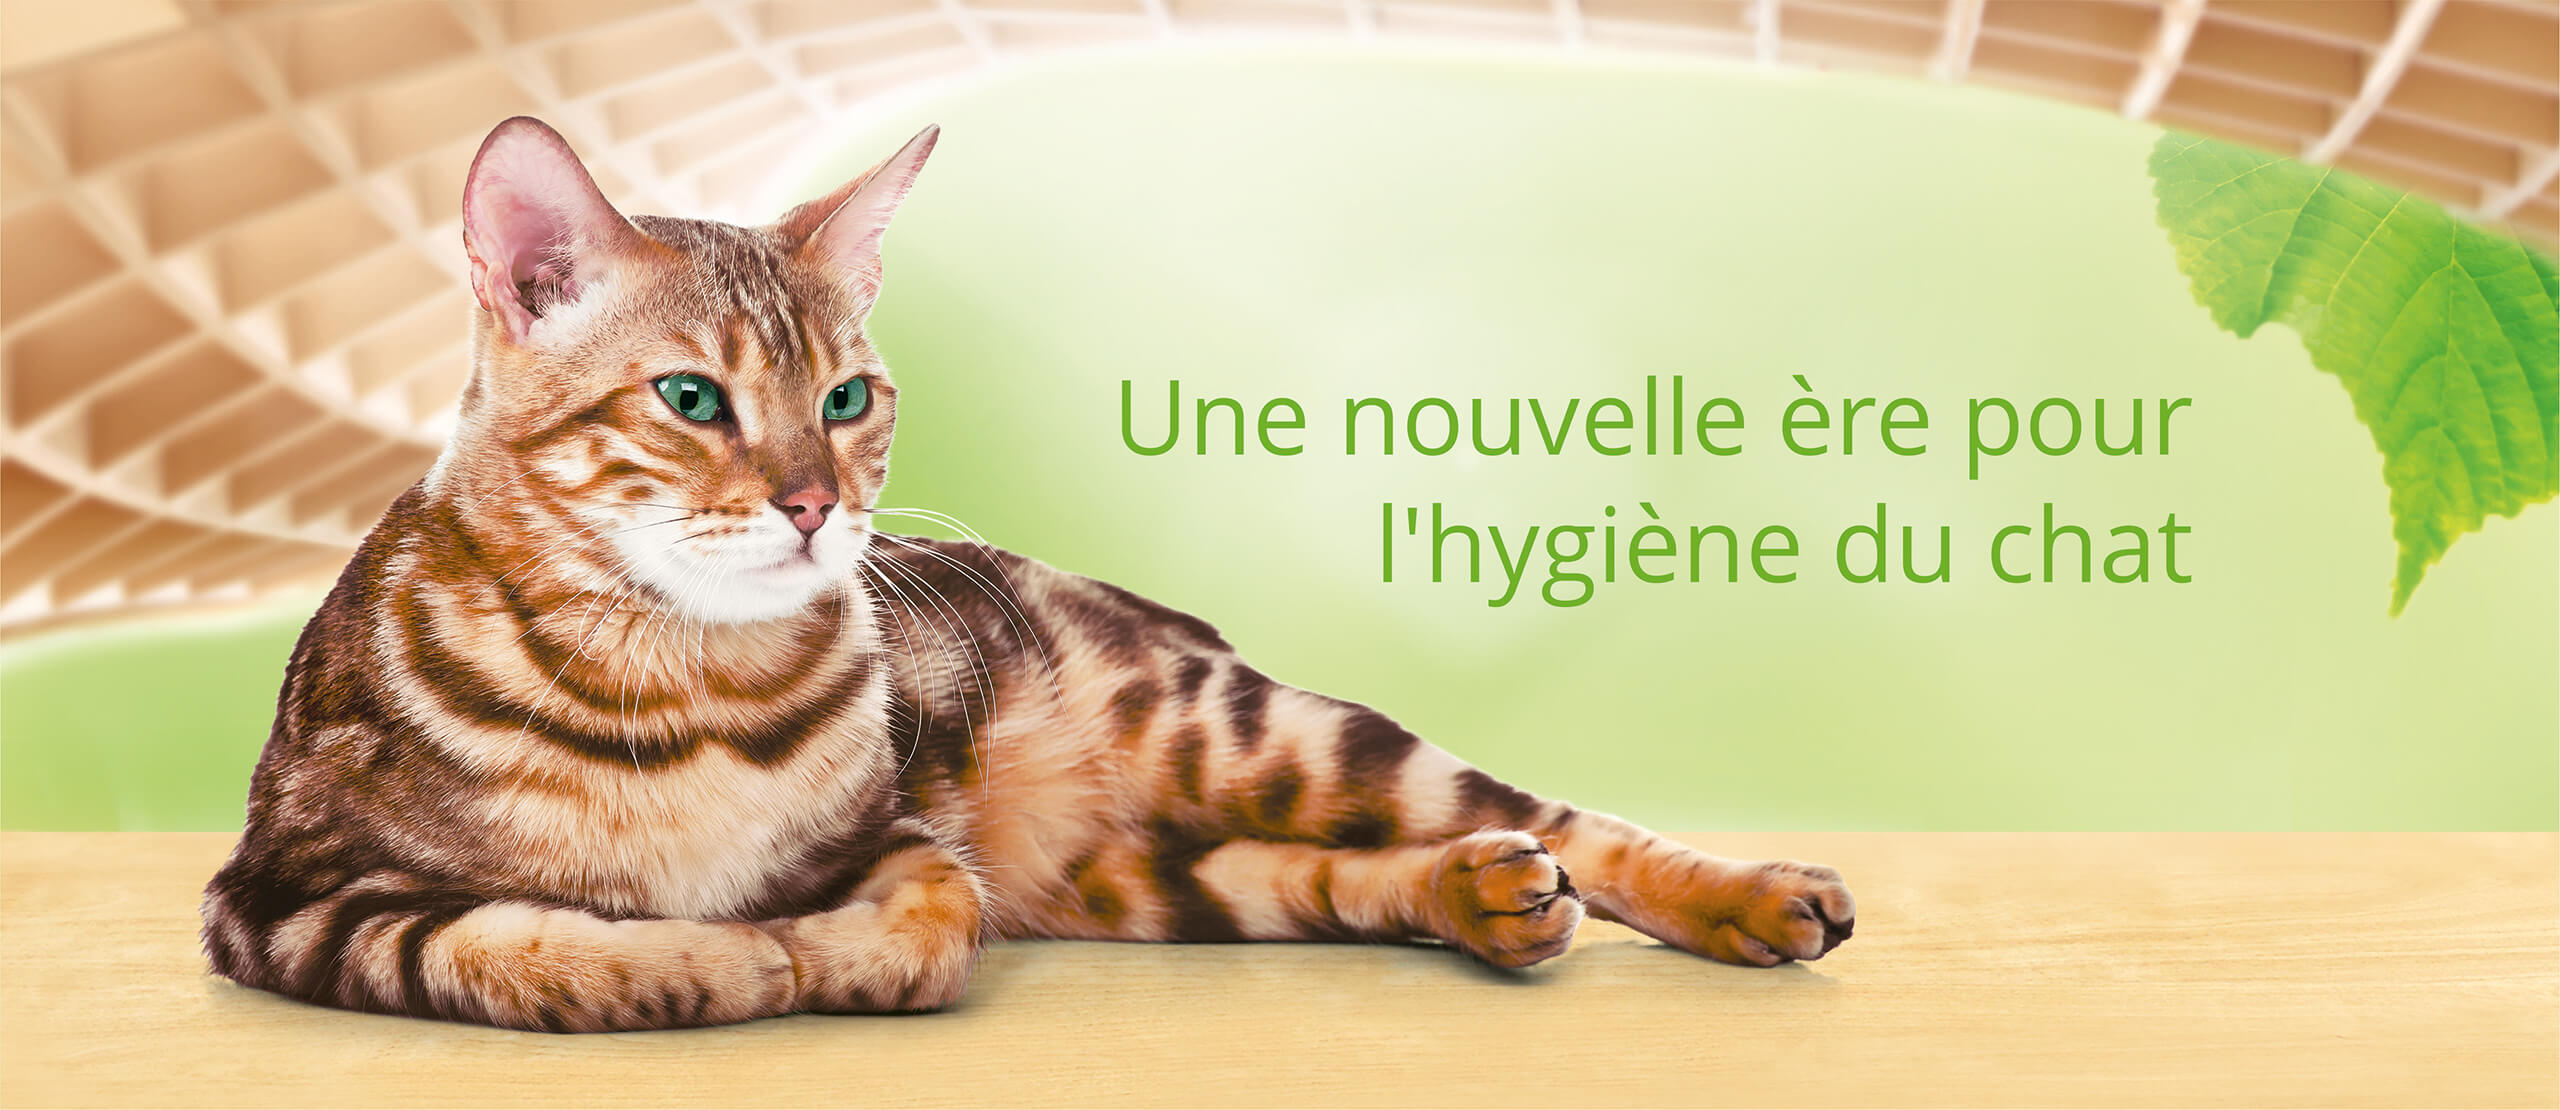 Cat's Best: Une nouvelle ère pour l'hygiène du chat.